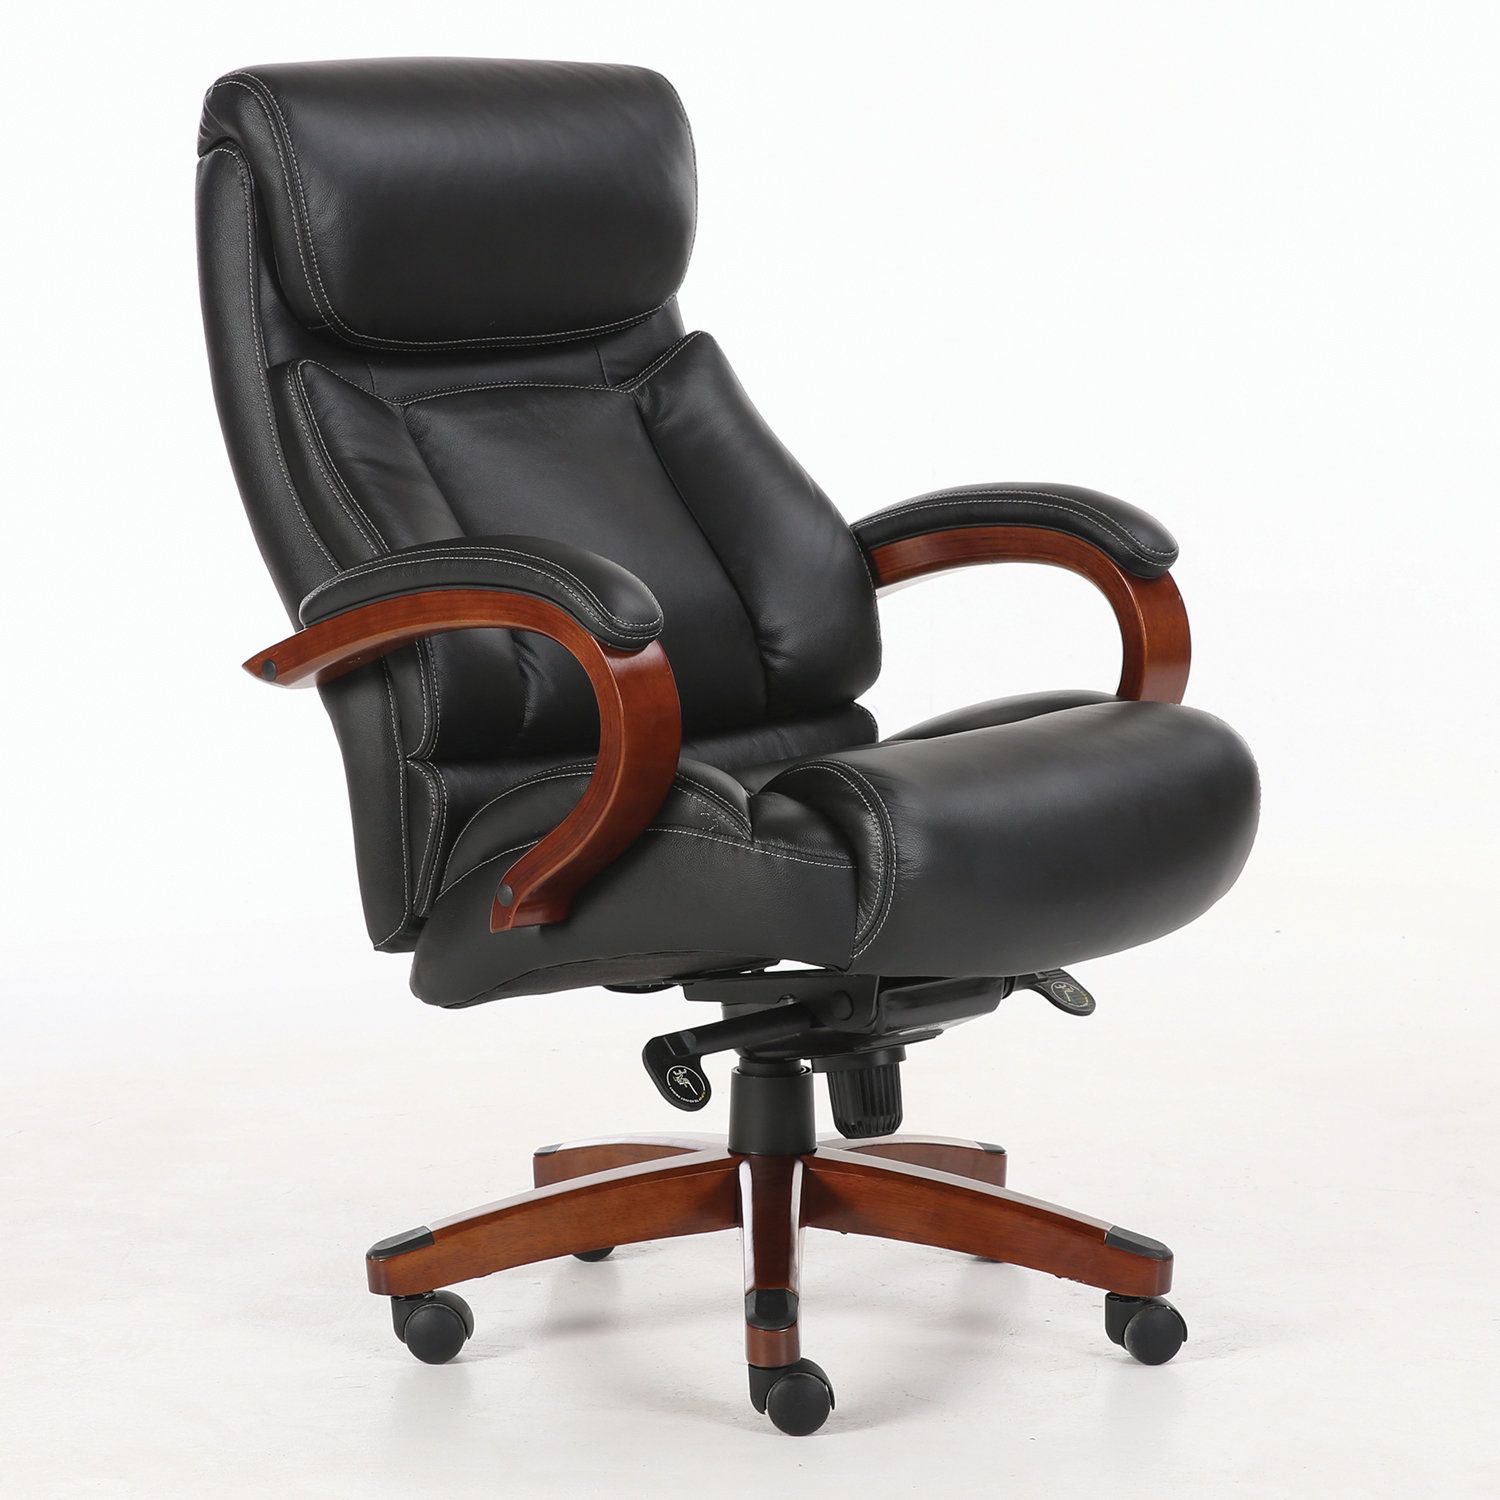 Модель офисного кресла. Кресло Infinity ex-707. Кресло Brabix ex555. Кресло руководителя FX-139. Кресло офисное (дерево/кожа усиленное, черный) компакт.